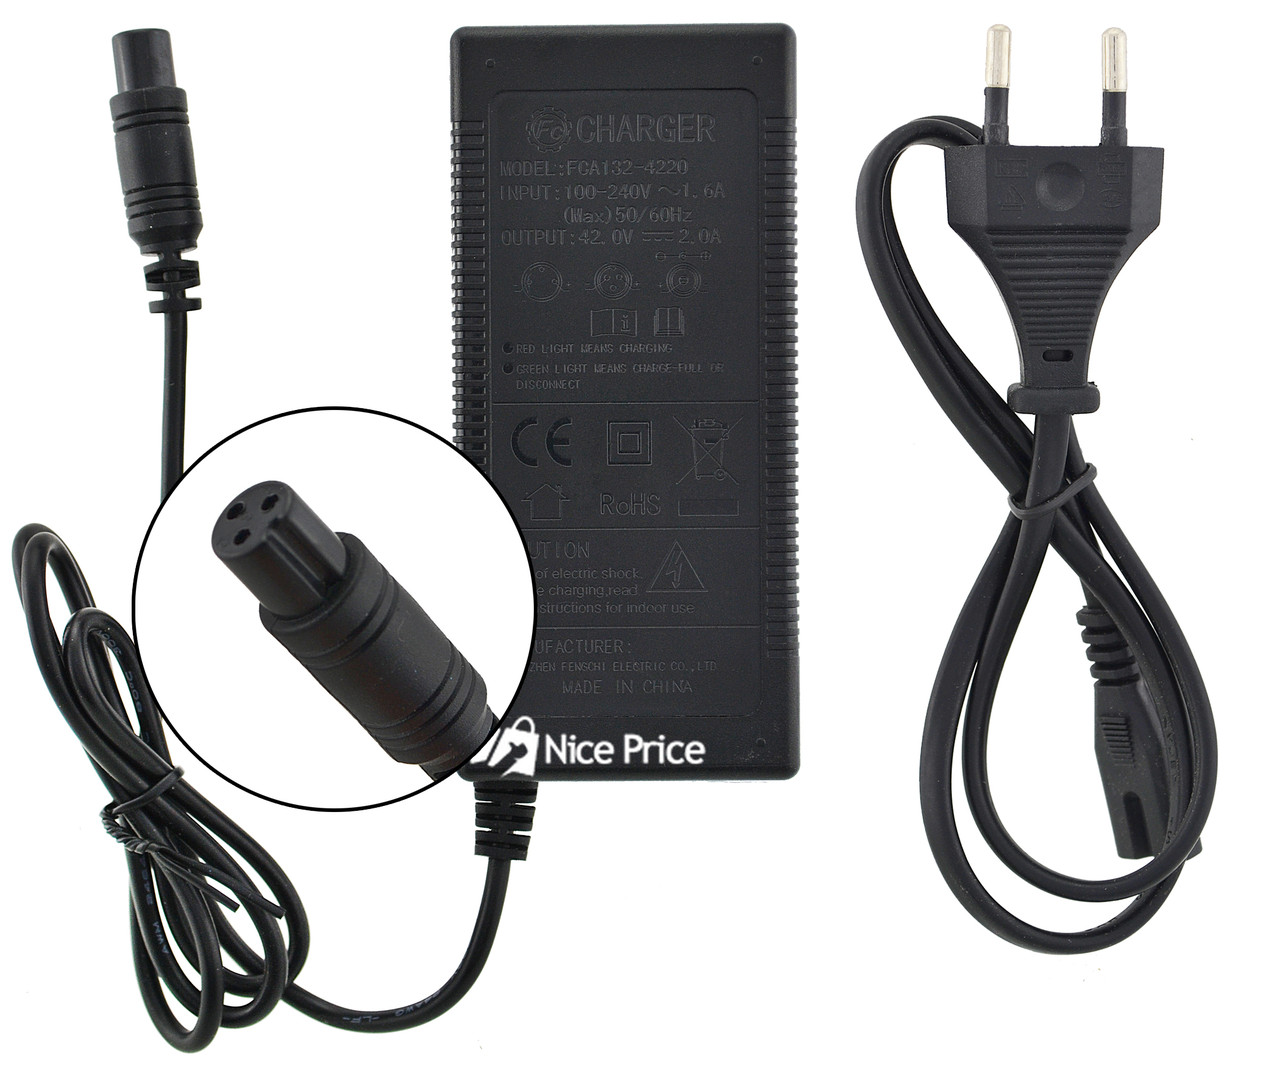 

Универсальное сетевое зарядное устройство для гиробордов UKC FCA132 - 4220 + сетевой кабель, Черный